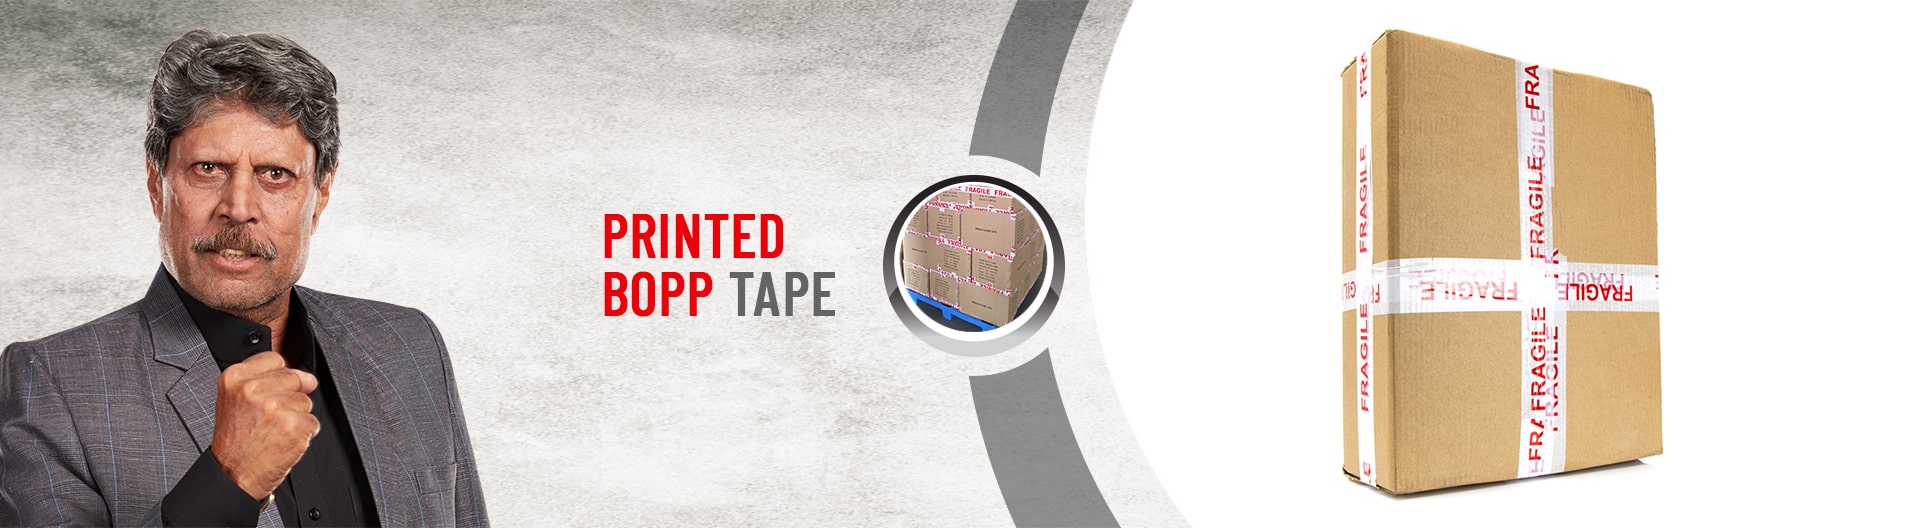 AIPL bopp printed tape